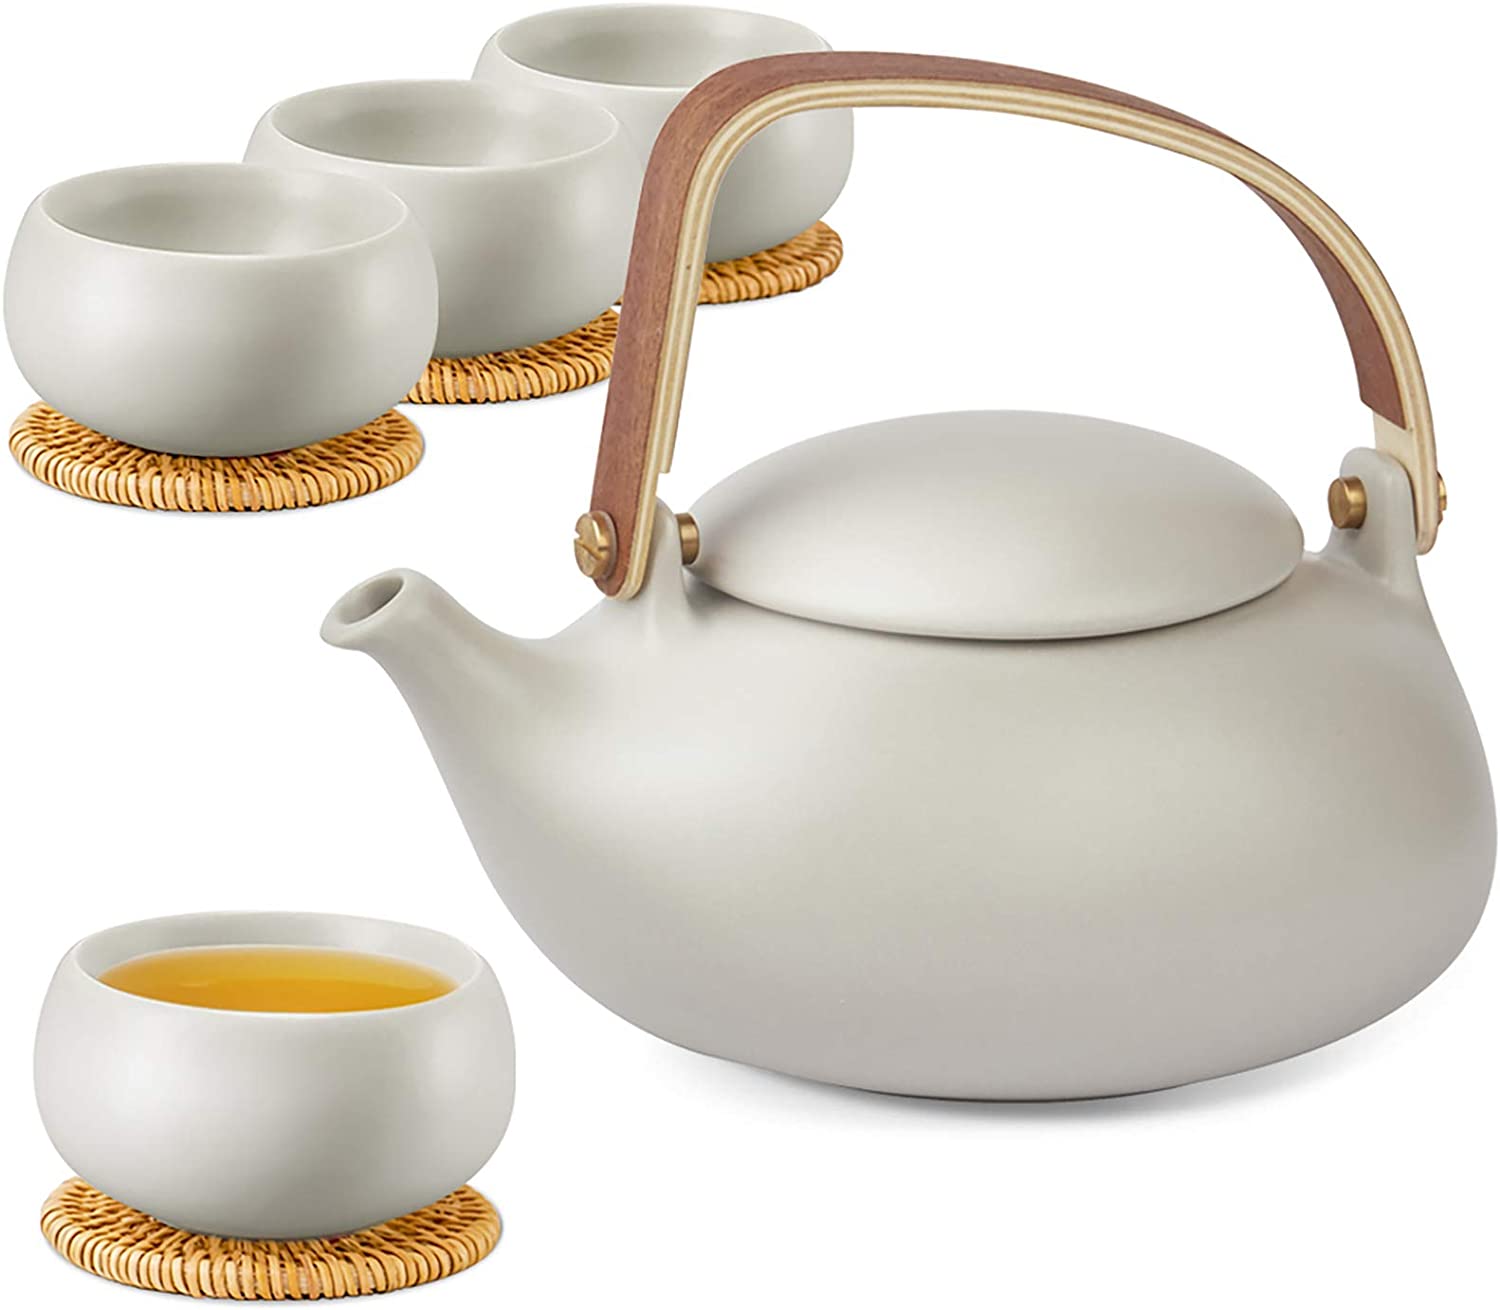 Zens Porcelain Teapot for Loose Leaves, Flower Tea Bags, Herbal Tea, White Grey